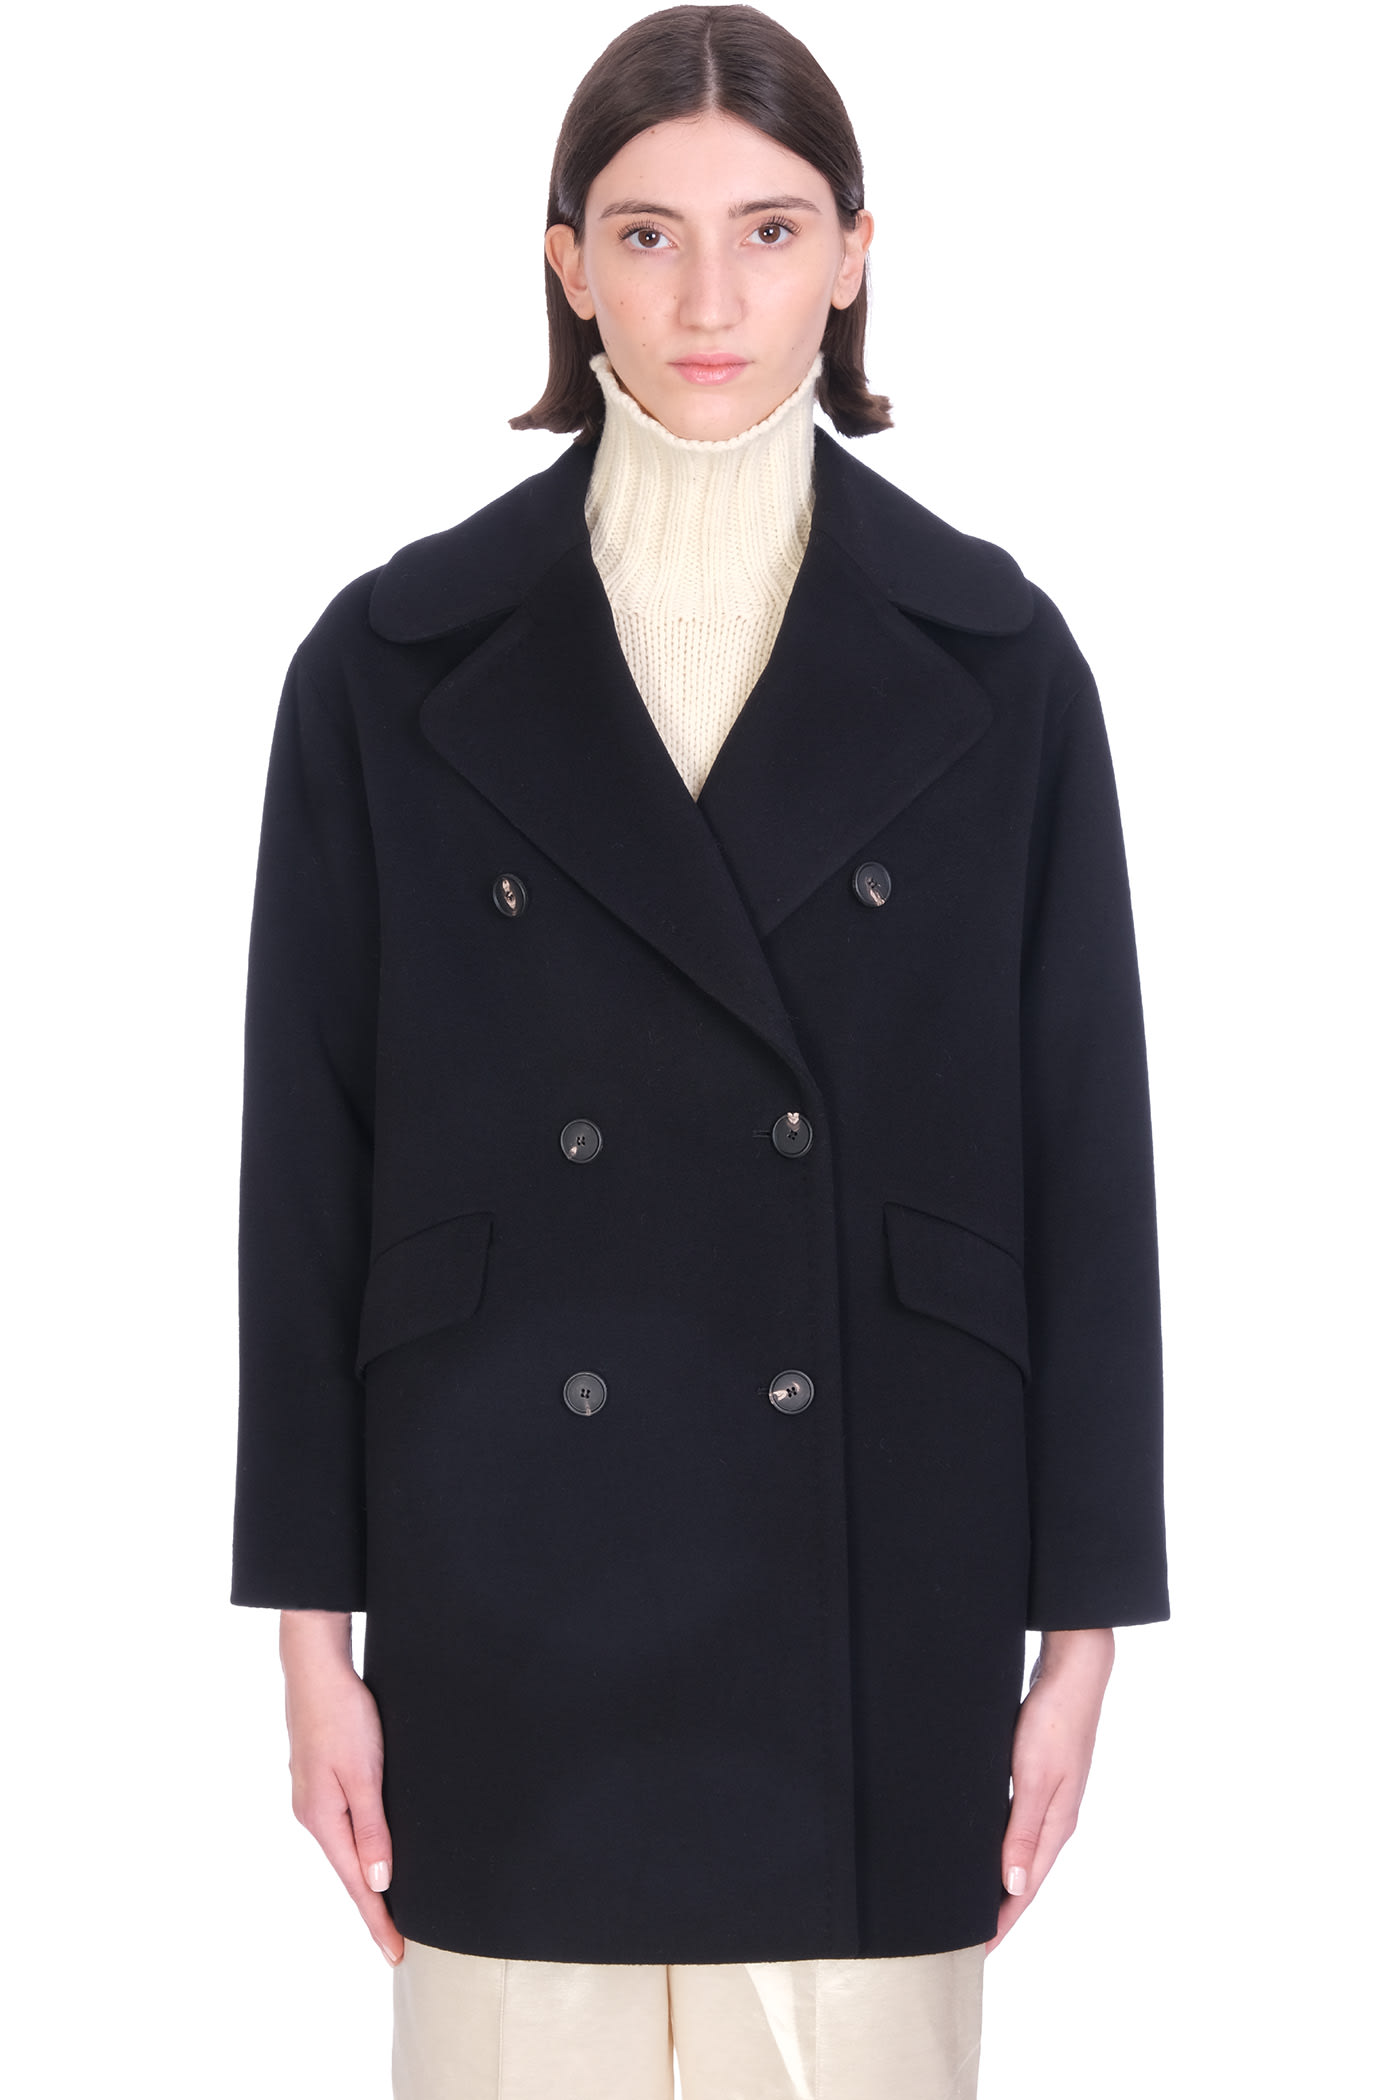 Tagliatore 0205 Ariane Coat In Black Wool